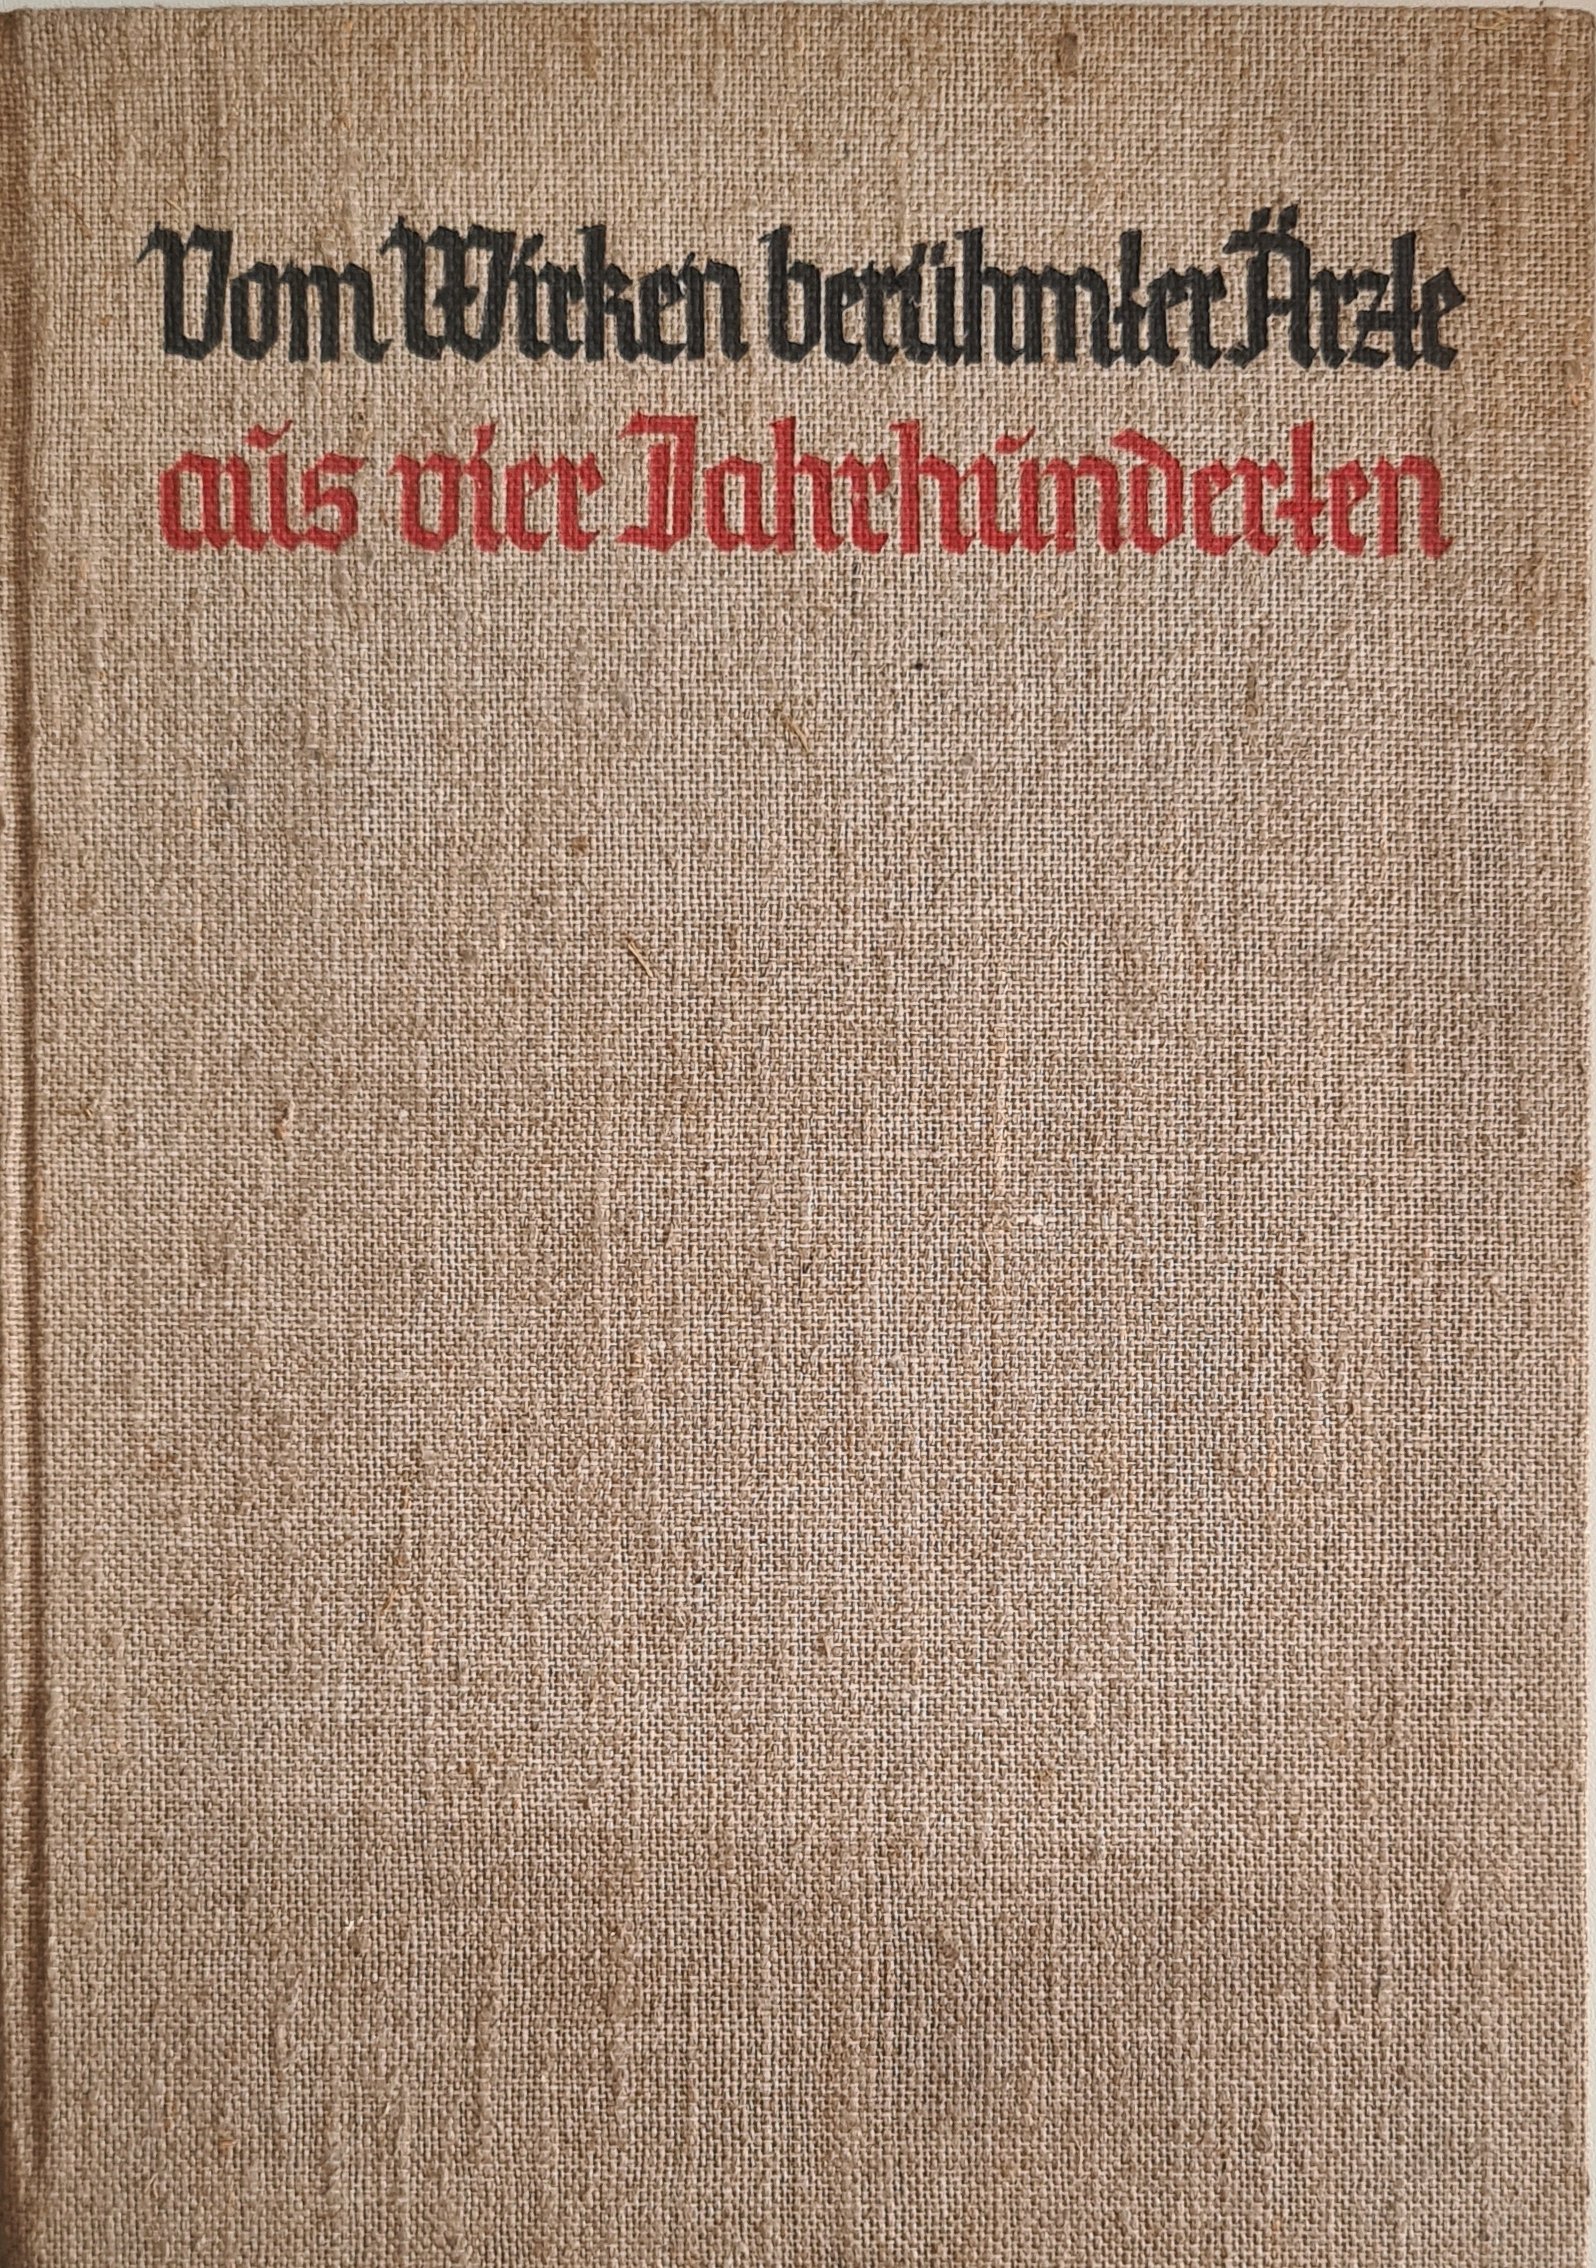 Vom Wirken berühmter Ärzte aus vier Jahrhunderten (Krankenhausmuseum Bielefeld e.V. CC BY-NC-SA)